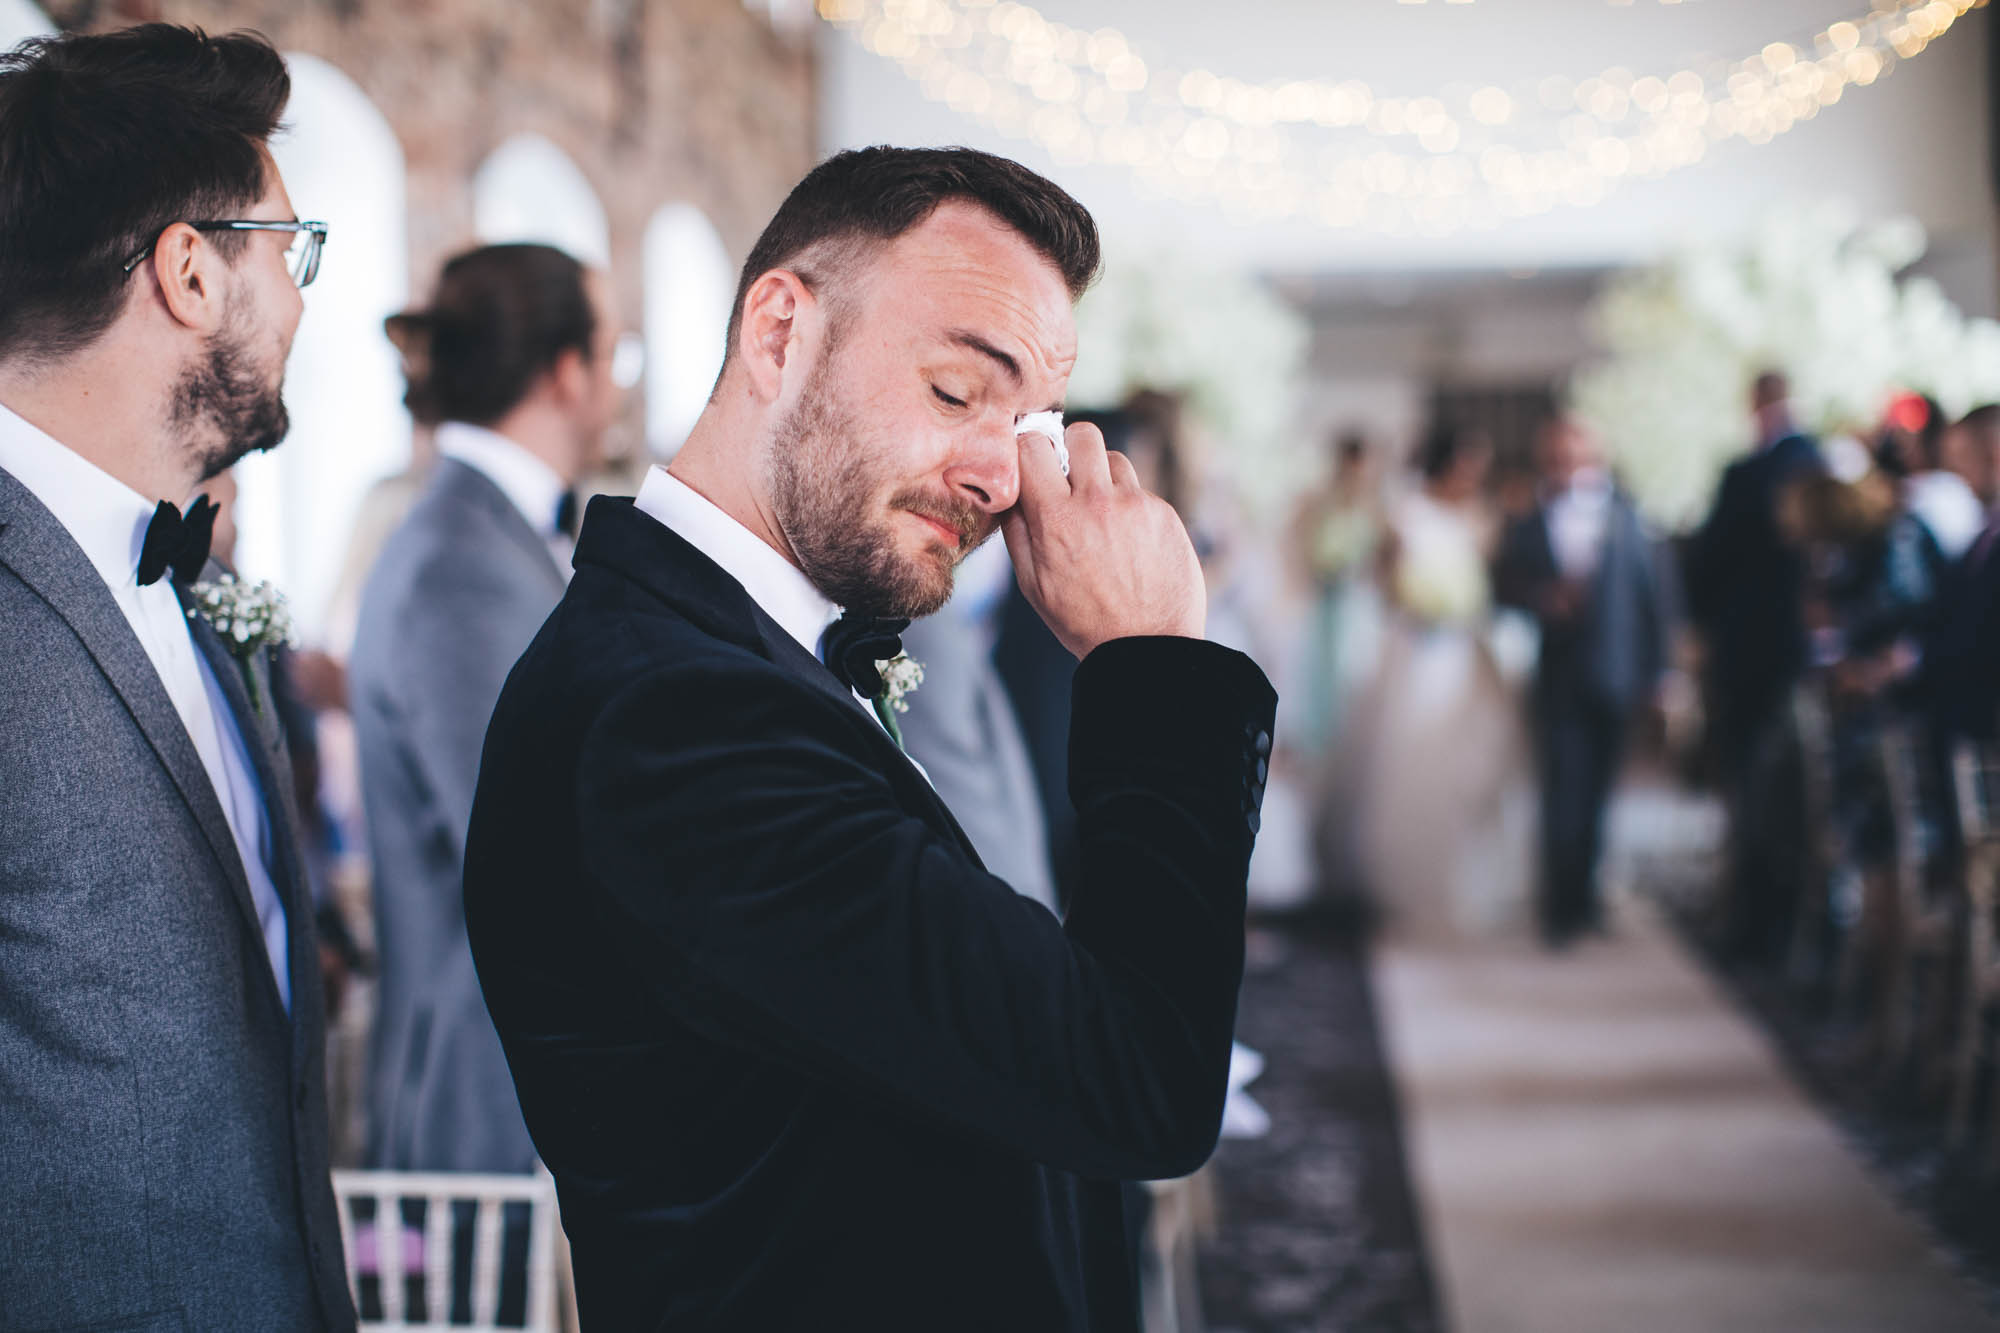 Emotional groom as Bride walks down the aisle